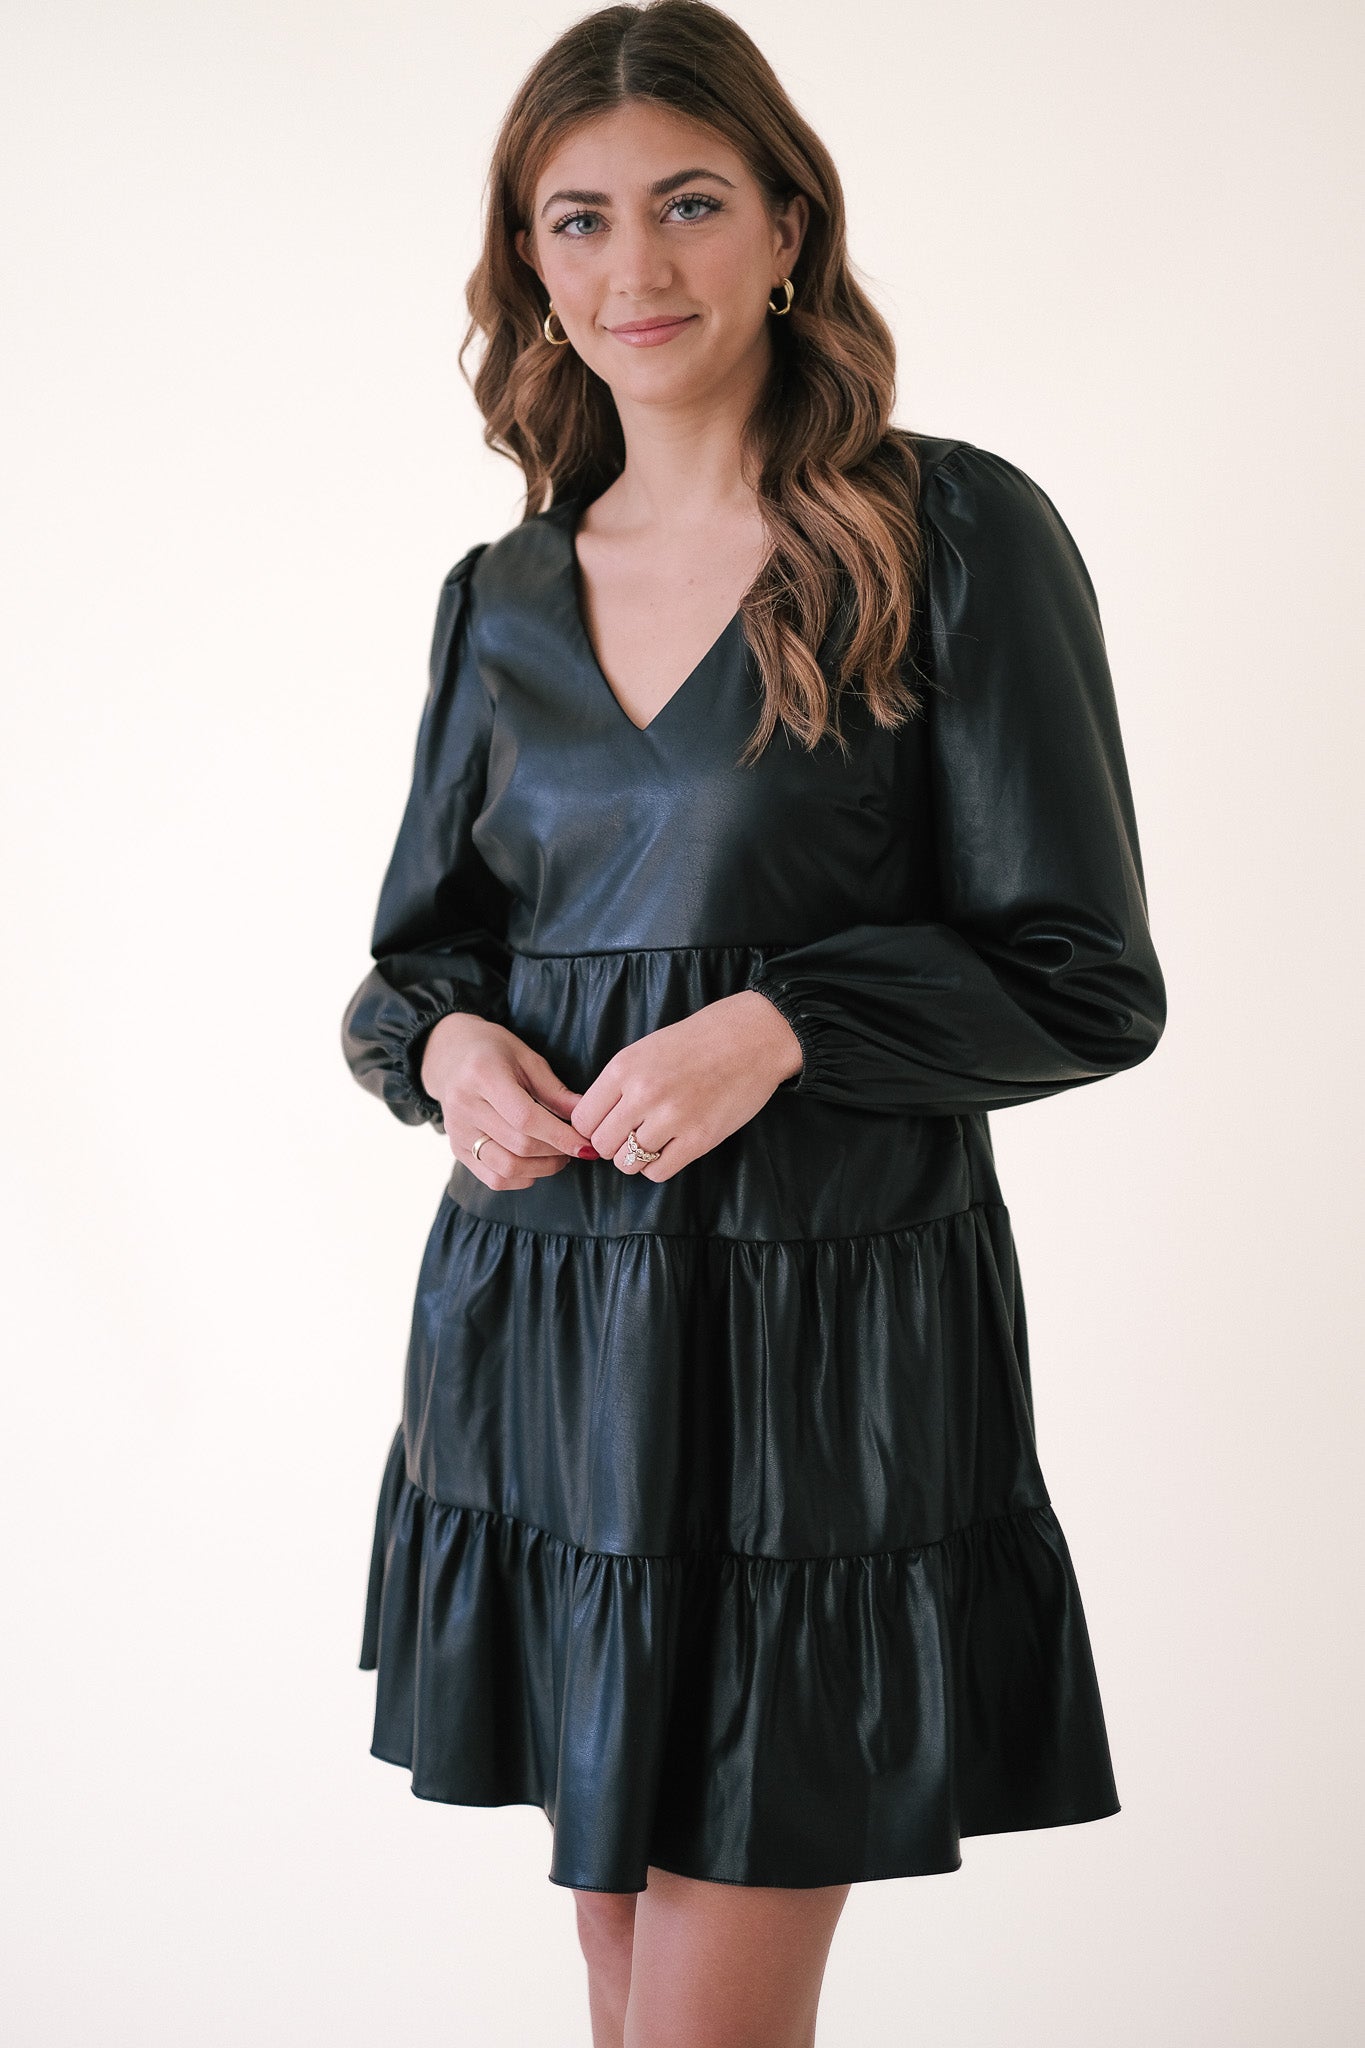 Lucy Paris Adler Black Faux Leather Tiered Mini Dress (XS)